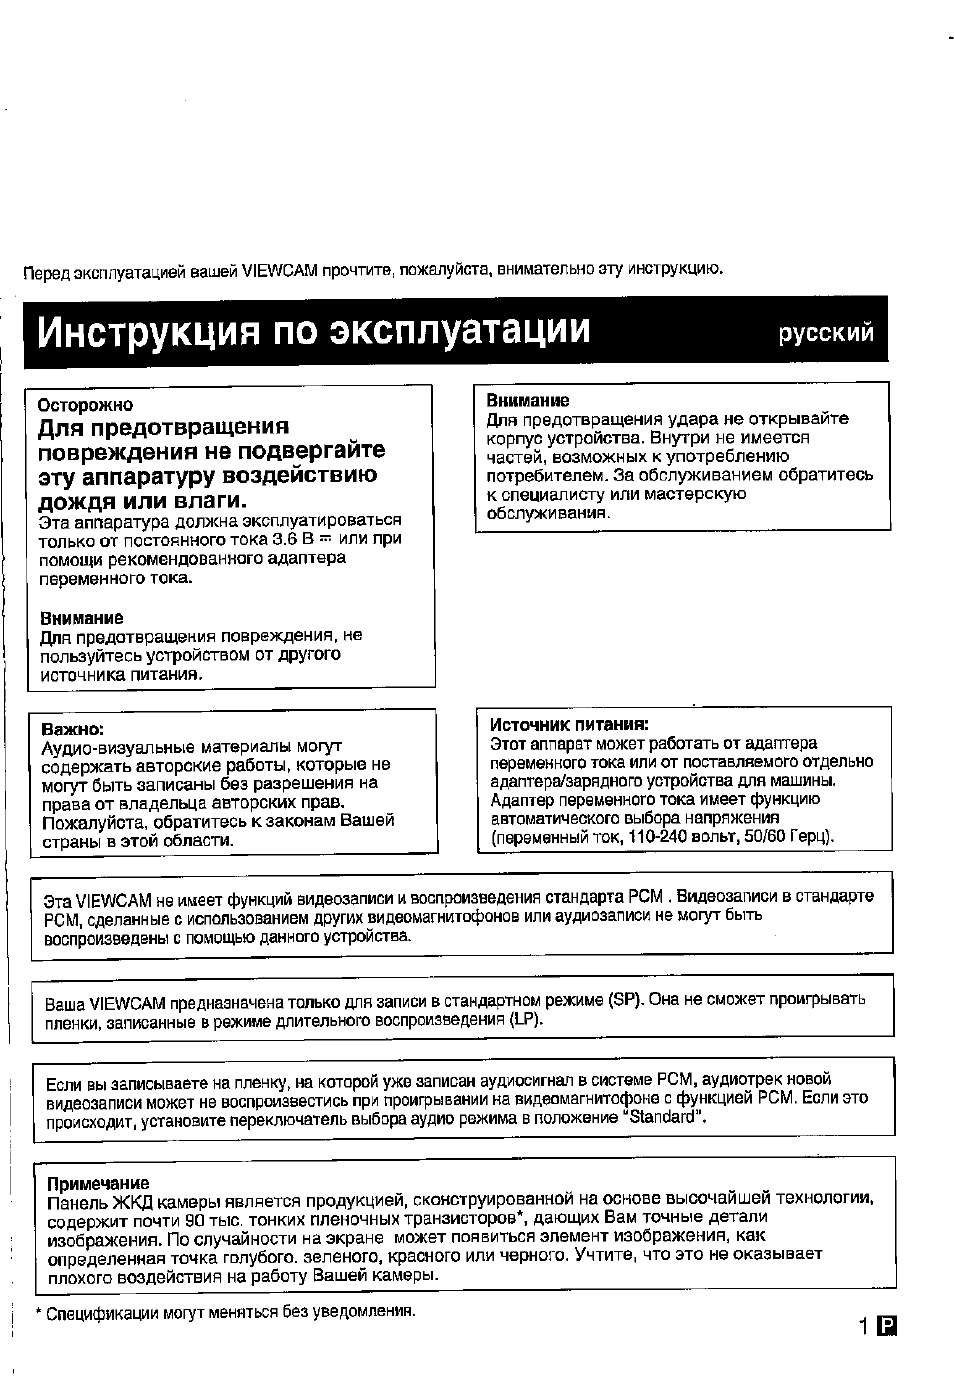 Инструкция по эксплуатации, 1 g l, Русским | Инструкция по эксплуатации Sharp VL-E78E | Страница 2 / 30